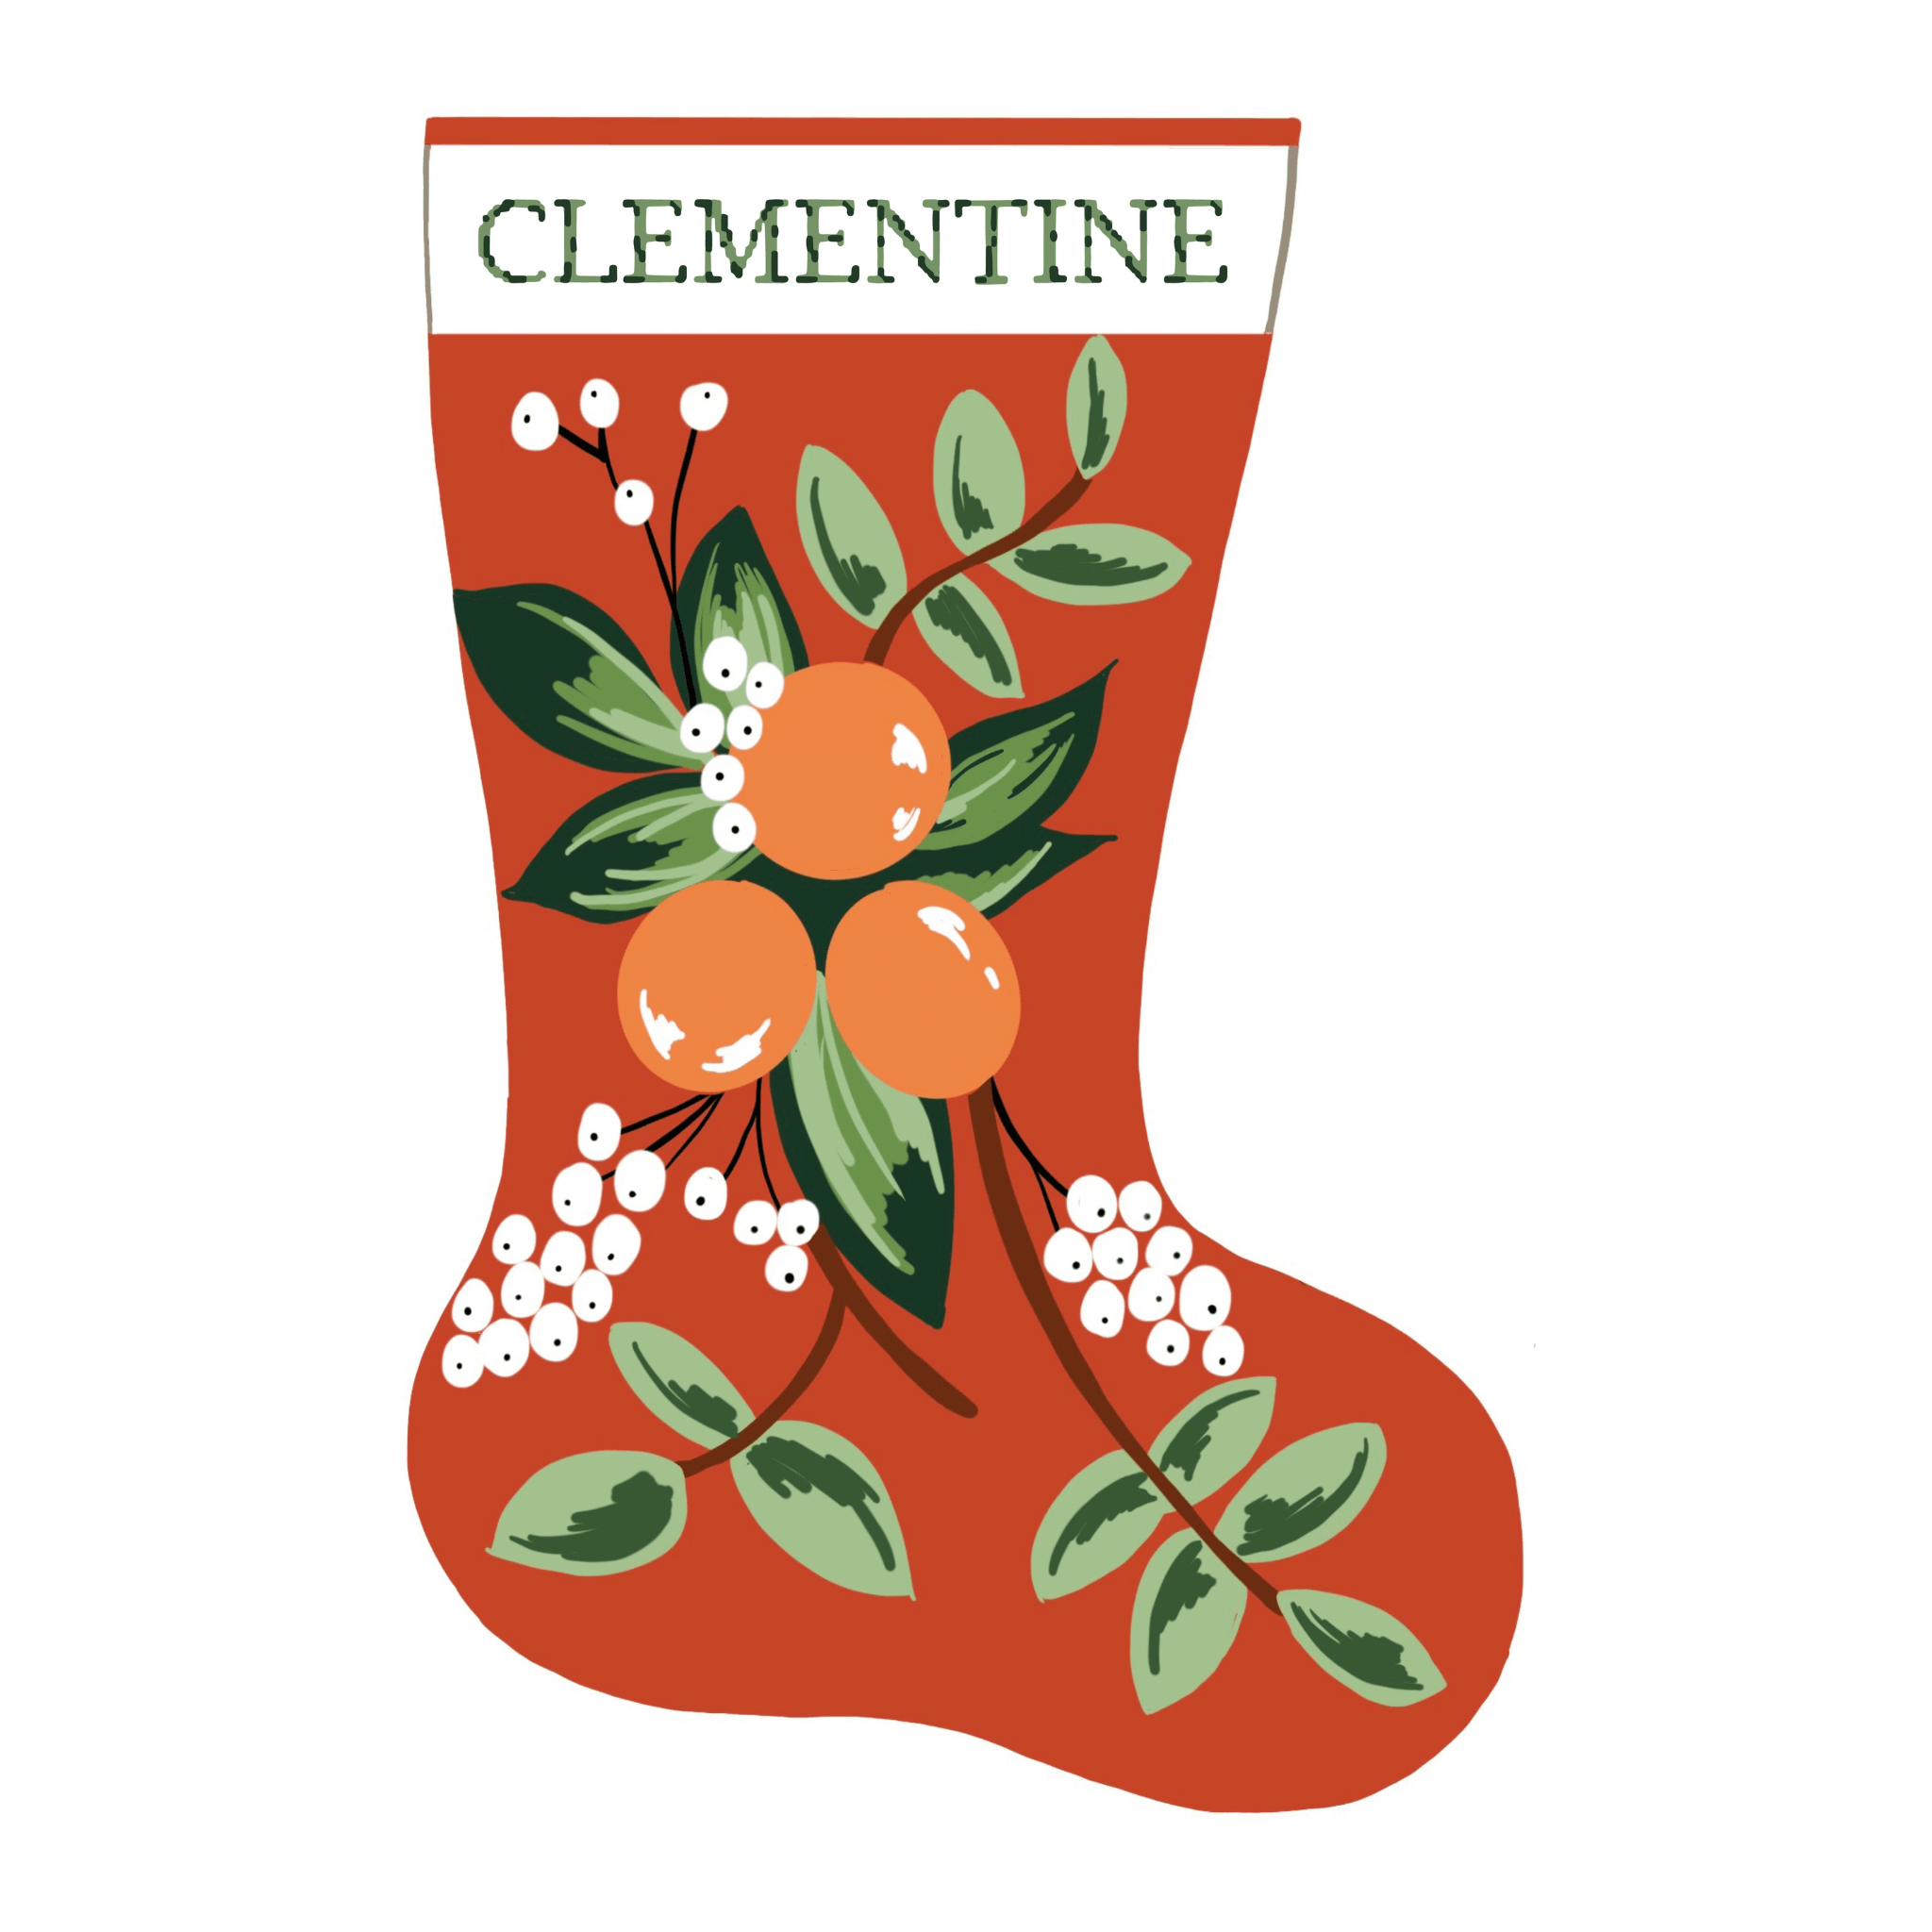 Personalized Needlepoint Christmas Socking Canvas